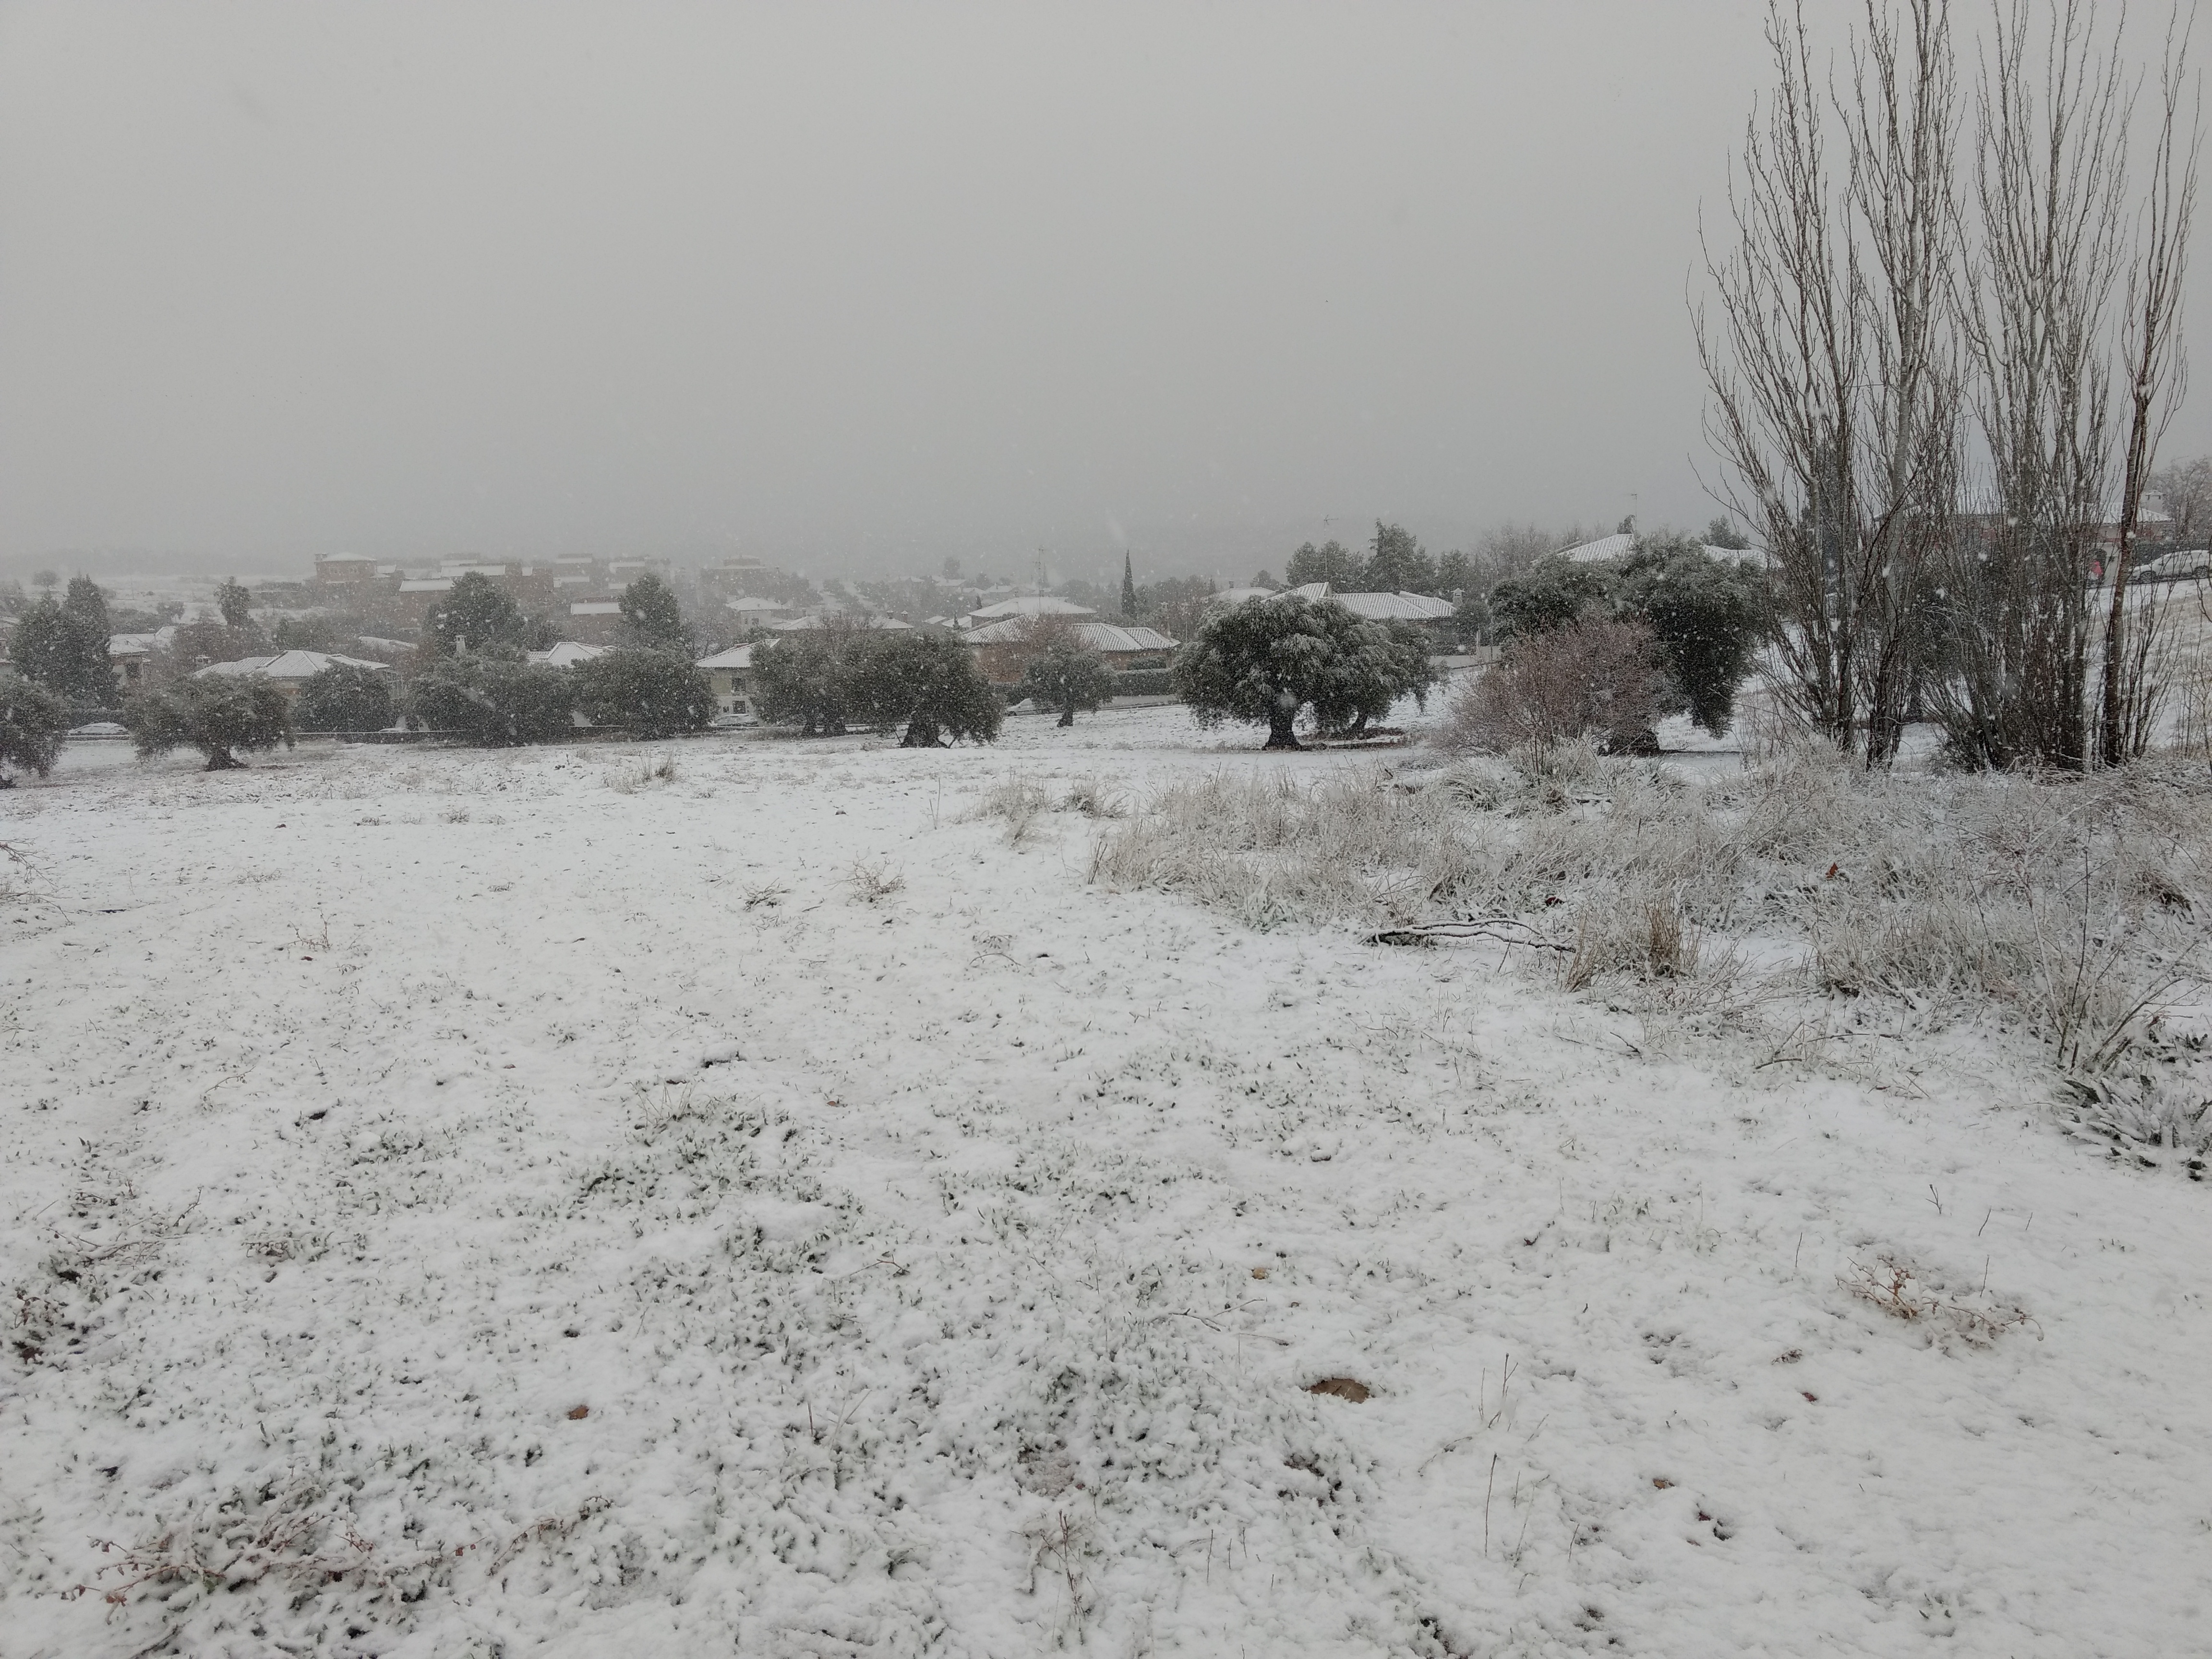 Bargas, municipio vecino de Toledo, ha amanecido cubierto de nieve